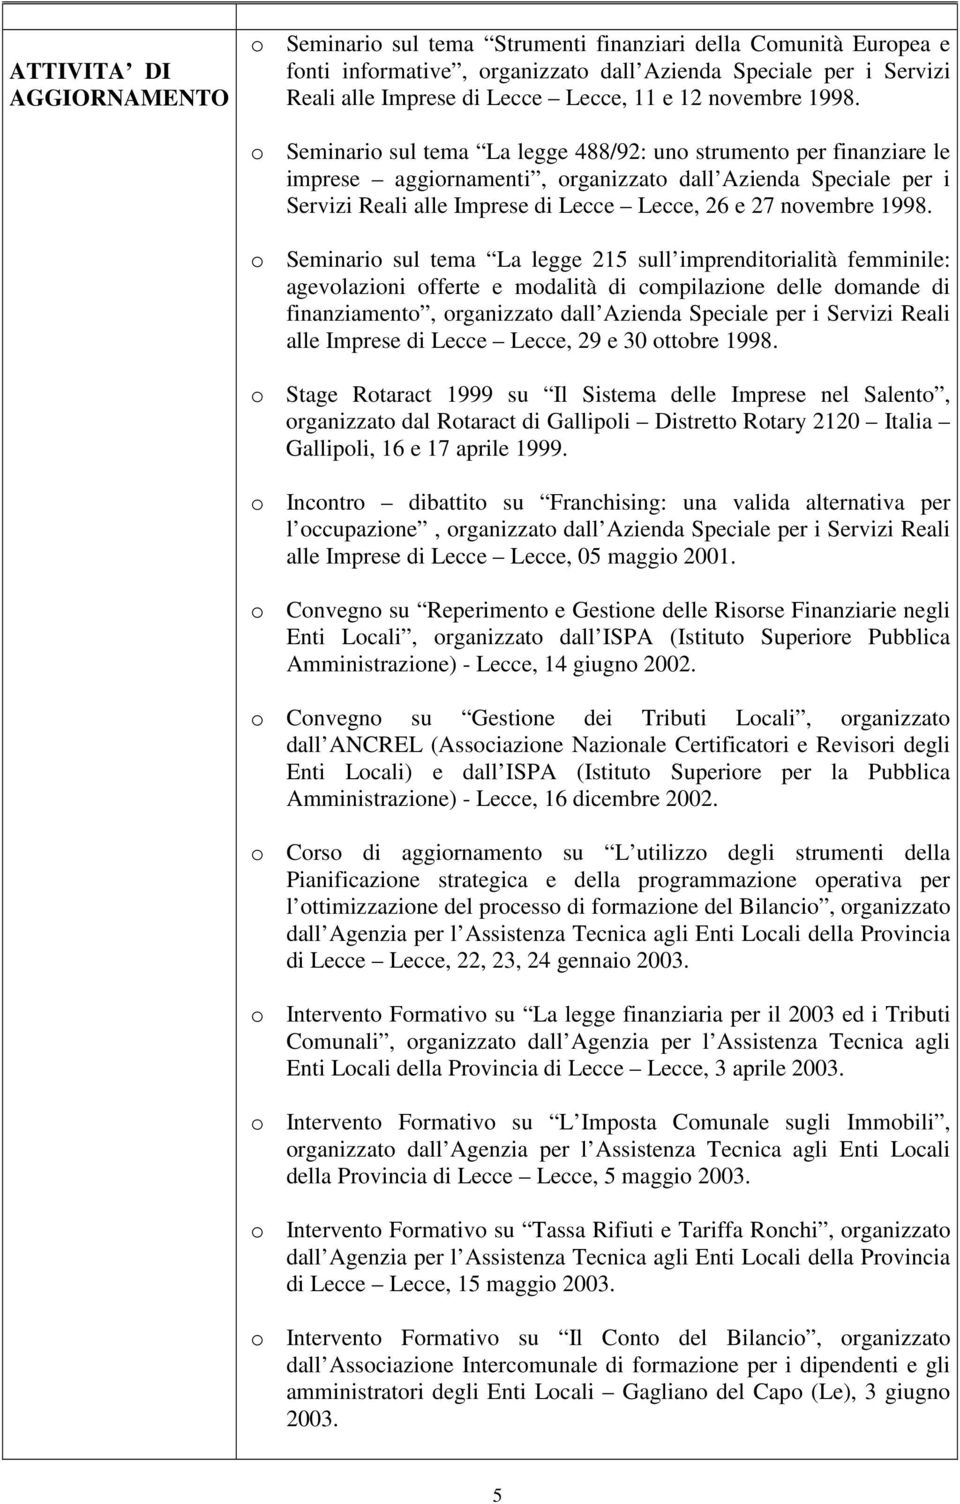 Seminari sul tema La legge 488/92: un strument per finanziare le imprese aggirnamenti, rganizzat dall Azienda Speciale per i Servizi Reali alle Imprese di Lecce Lecce, 26 e 27  Seminari sul tema La